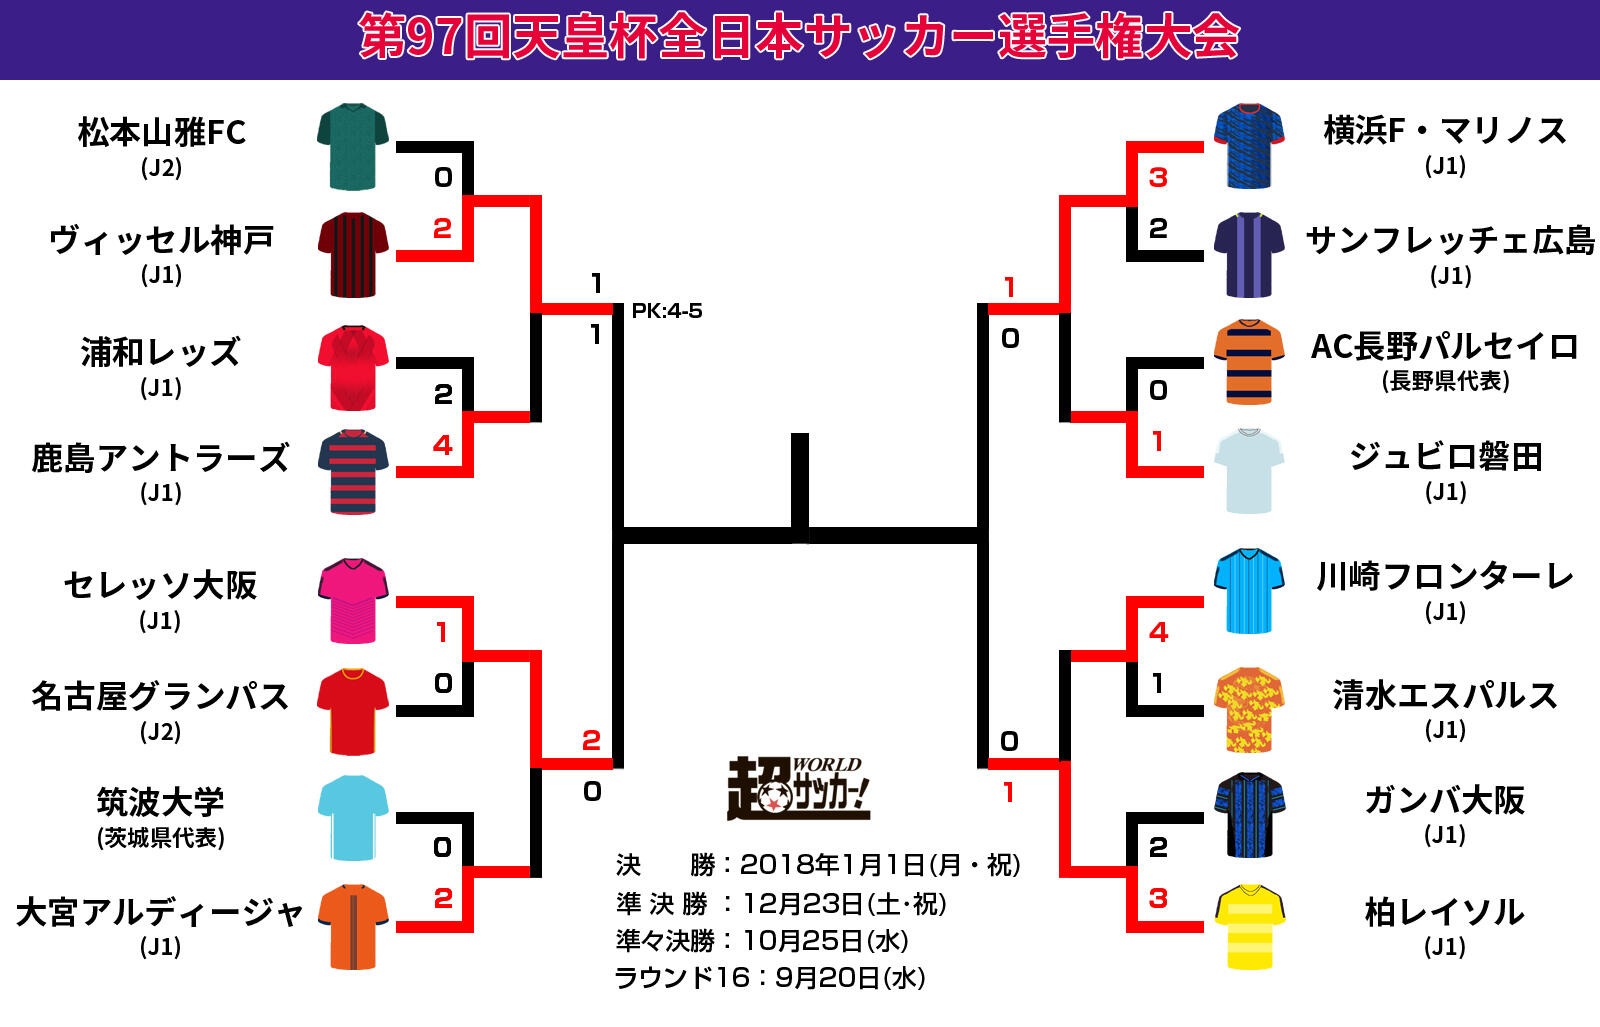 4強出揃う 準決勝は関西勢 関東勢同士対決 天皇杯 超ワールドサッカー